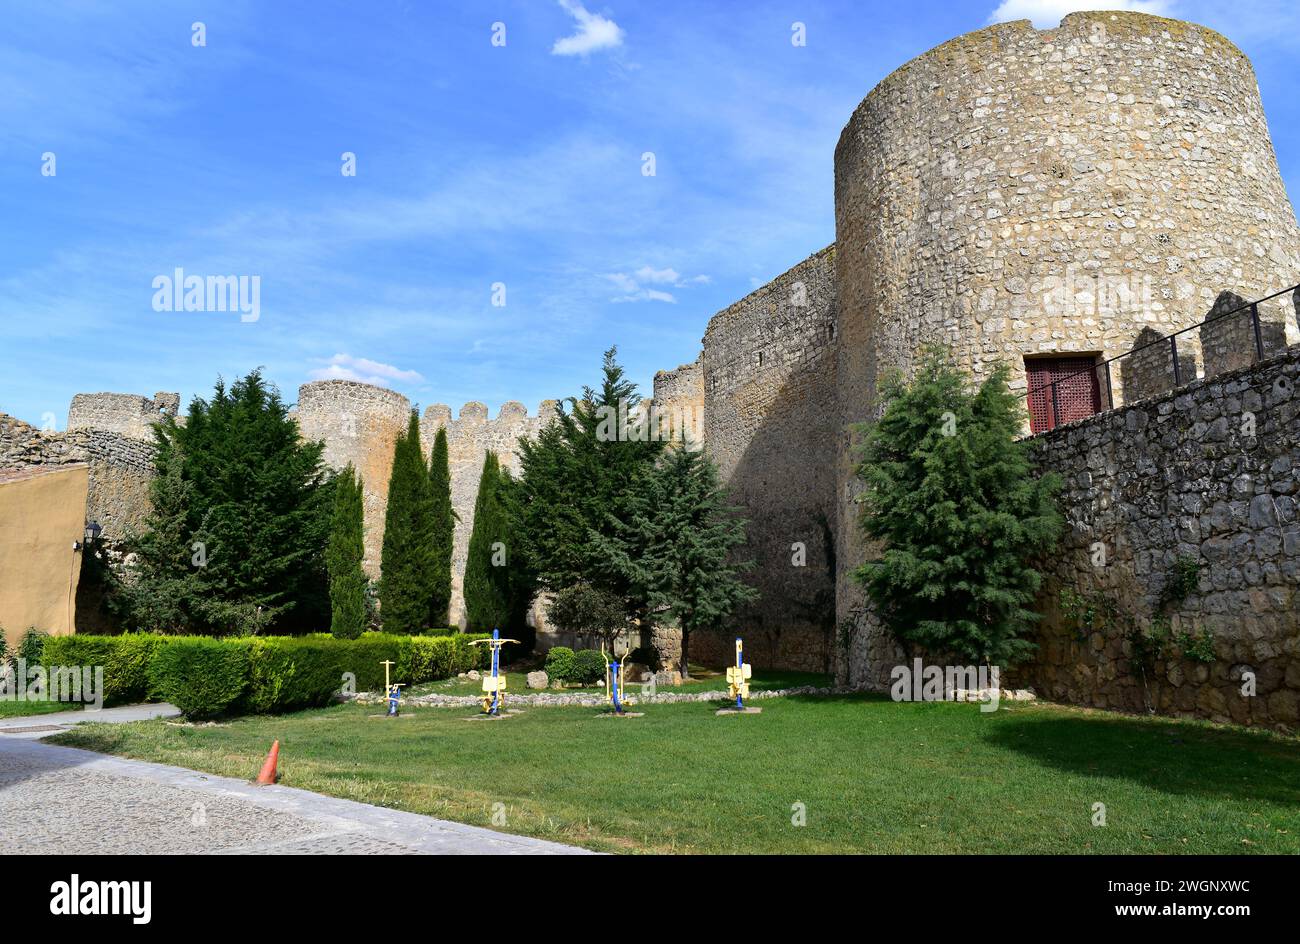 Urueña, medieval walled town. Conjunto Historico-Artistico. Valladolid province, Castilla y Leon, Spain. Stock Photo